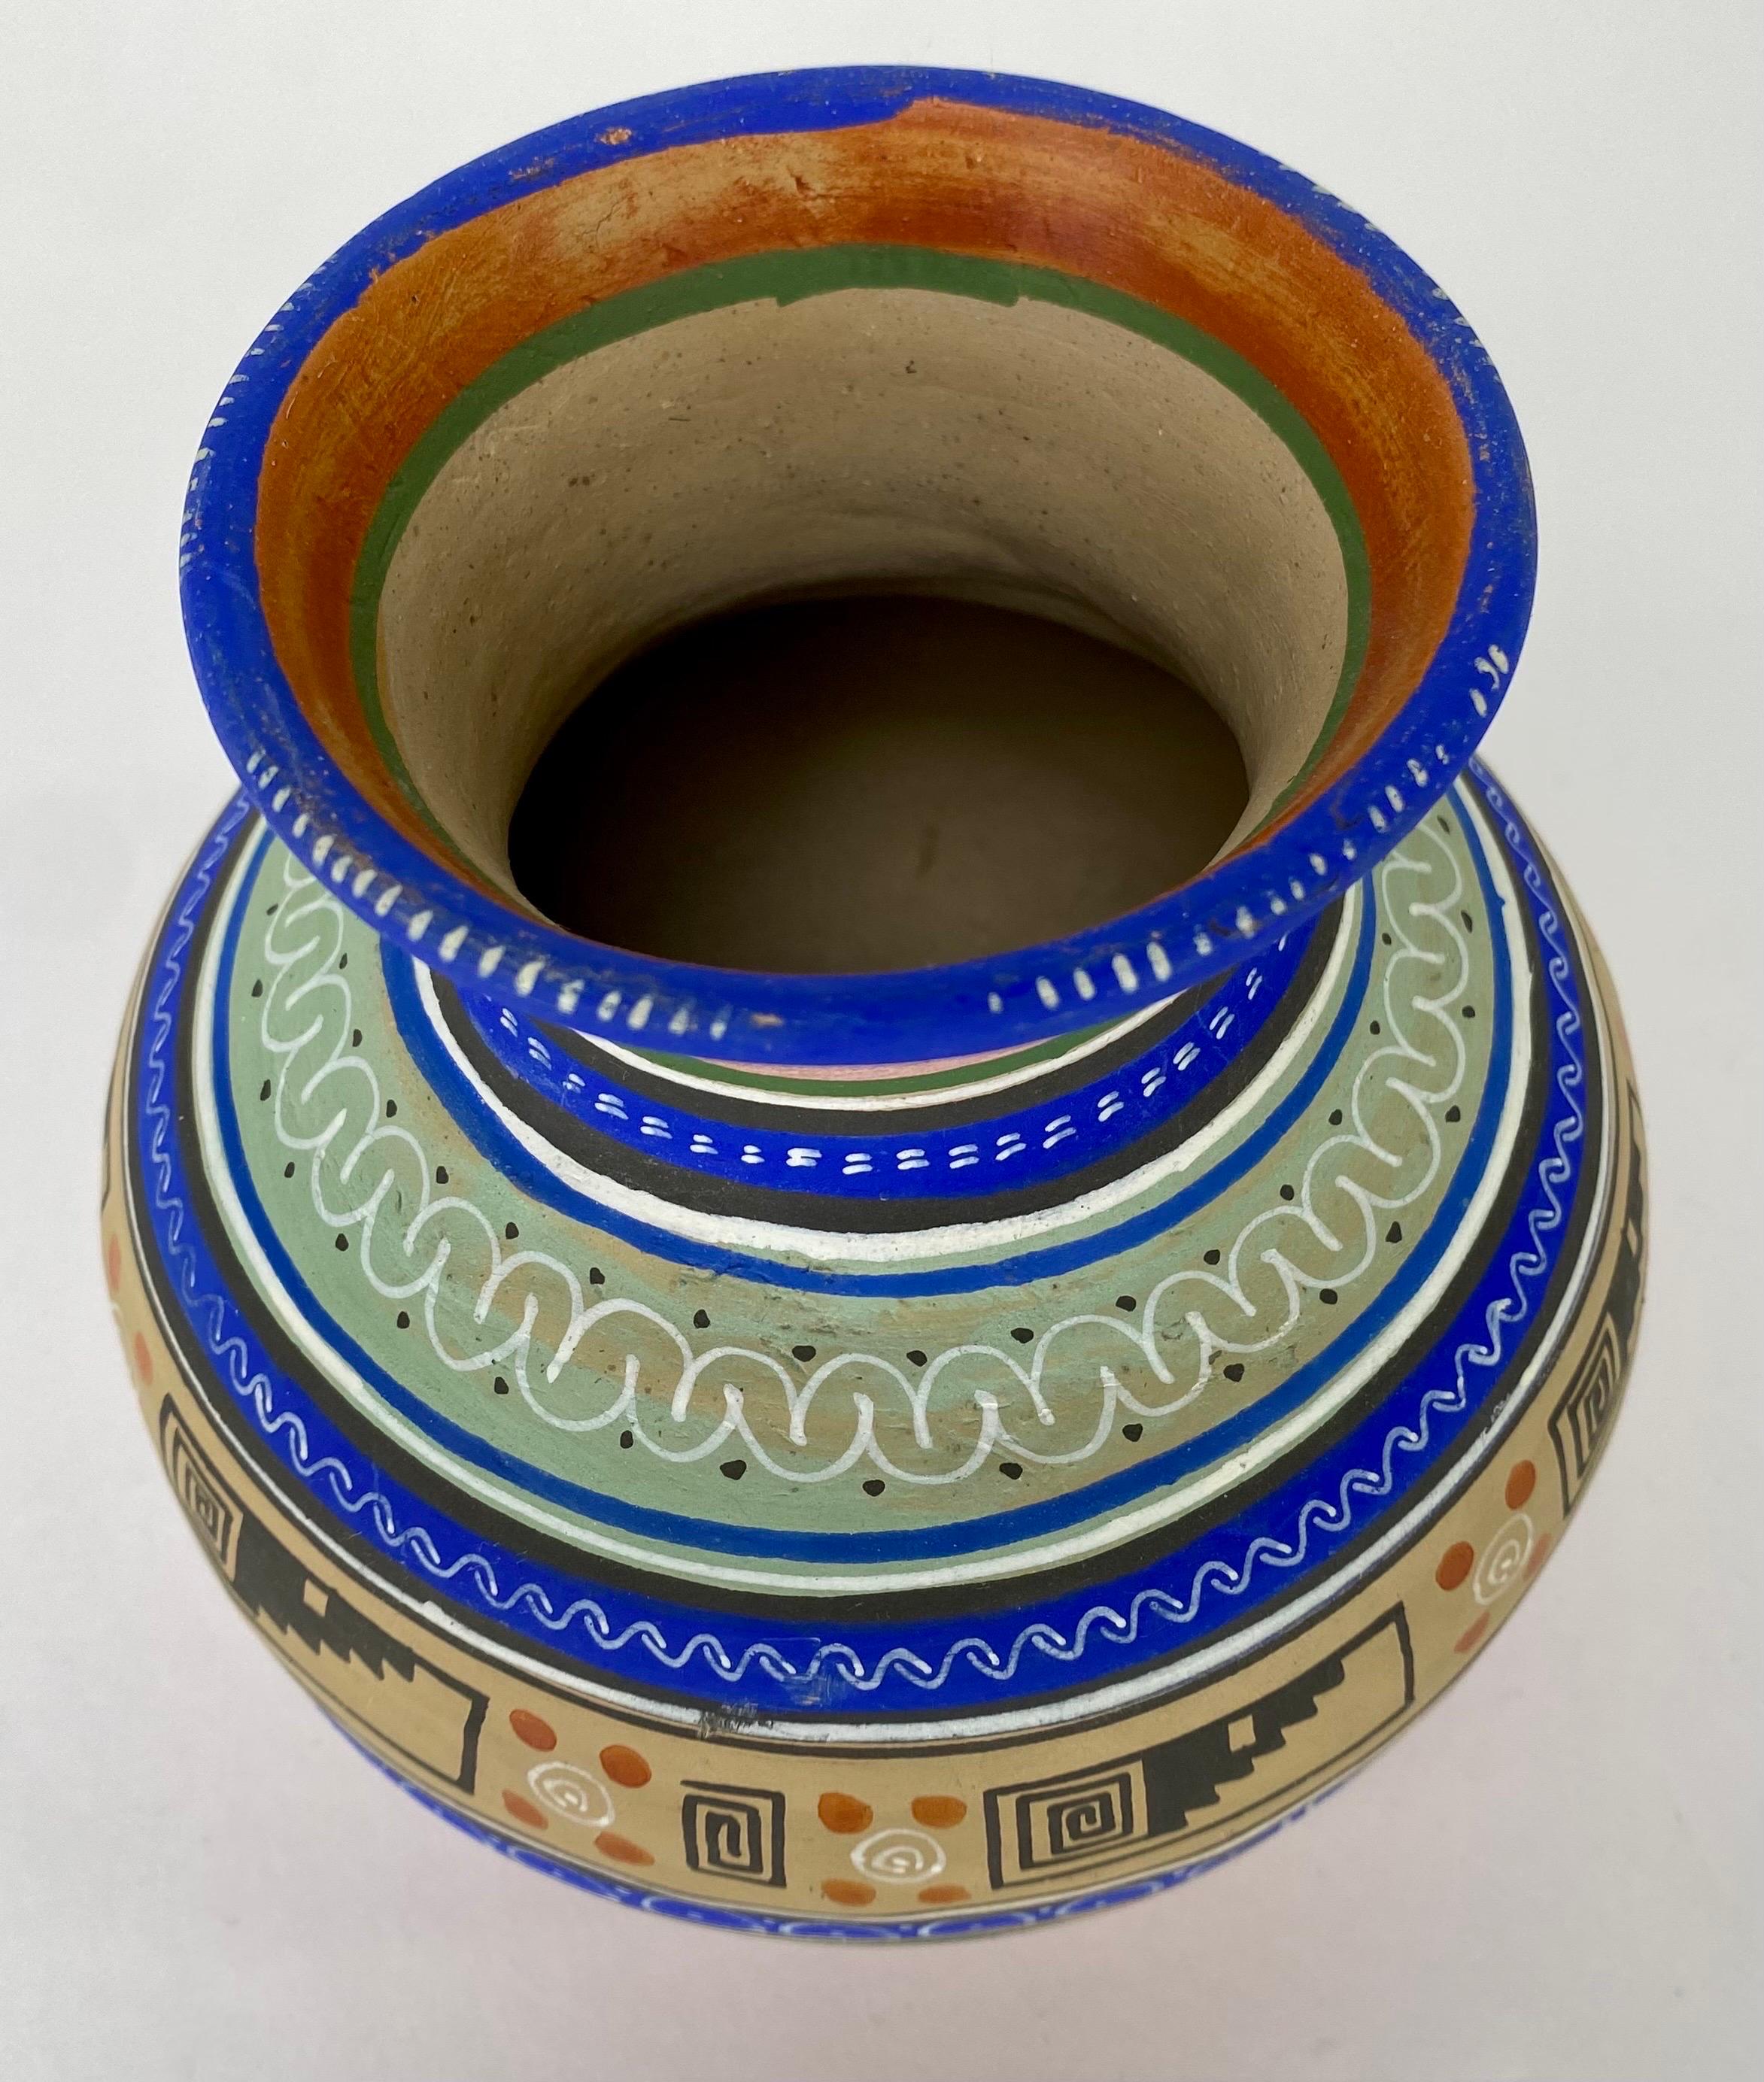 Petit vase en poterie artisanale tribale mexicaine. Ce magnifique vase présente des motifs tribaux géométriques et est peint à la main dans un magnifique bleu foncé électrique, un vert clair, un beige et un marron. Ce vase est le reflet de la riche